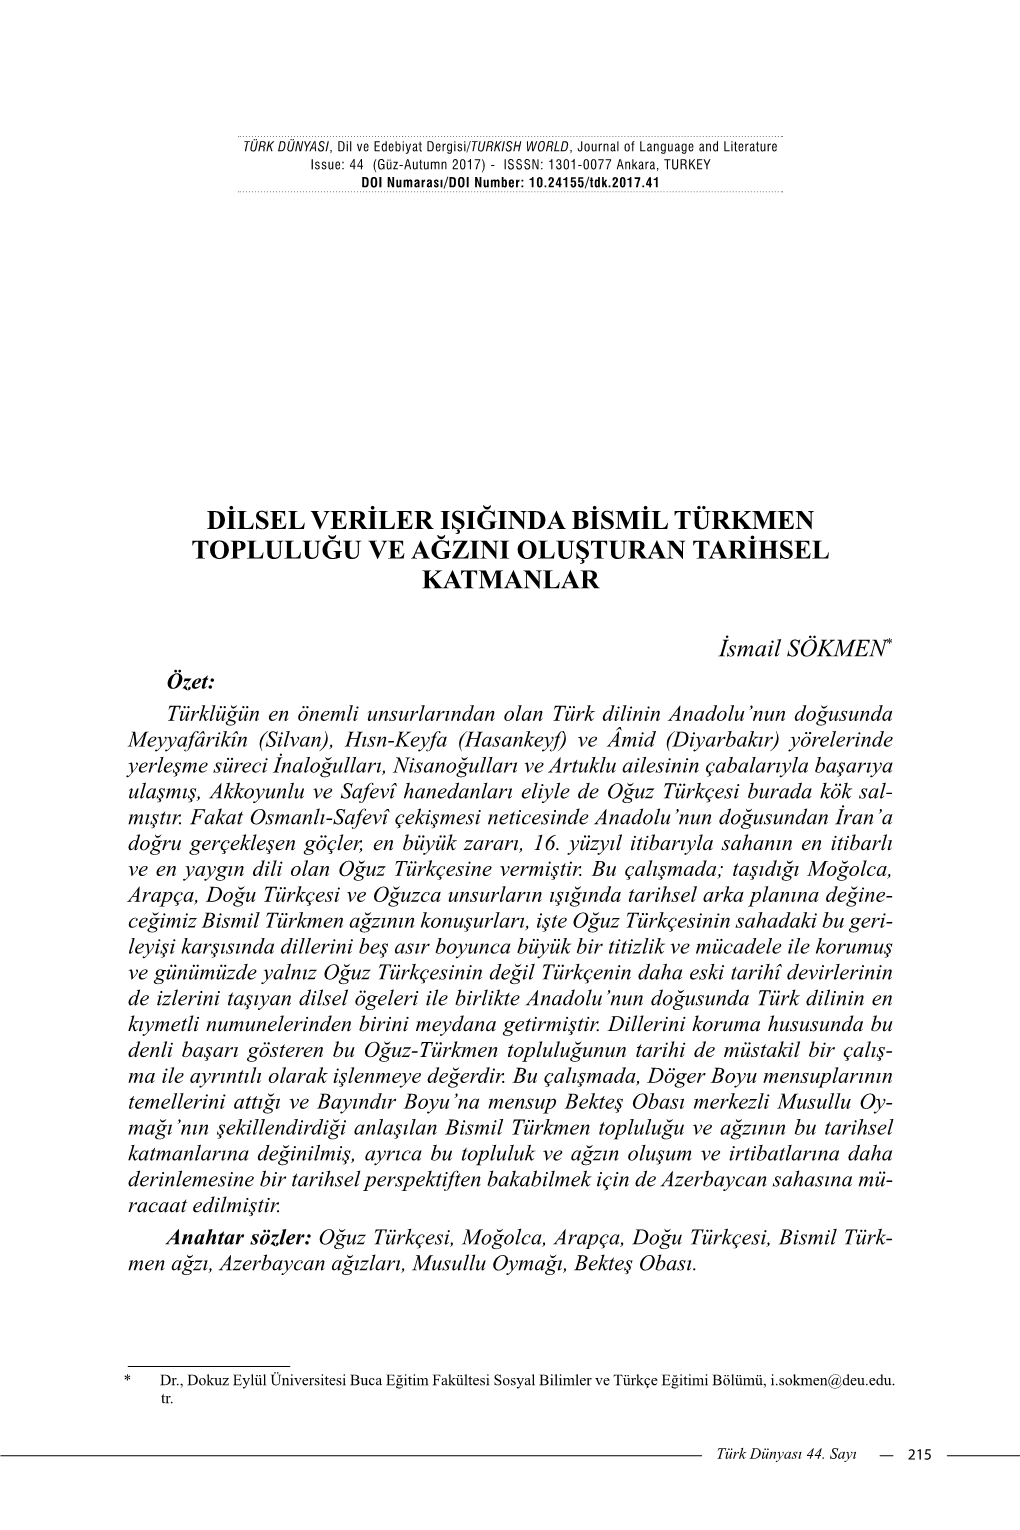 Dilsel Veriler Işiğinda Bismil Türkmen Topluluğu Ve Ağzini Oluşturan Tarihsel Katmanlar